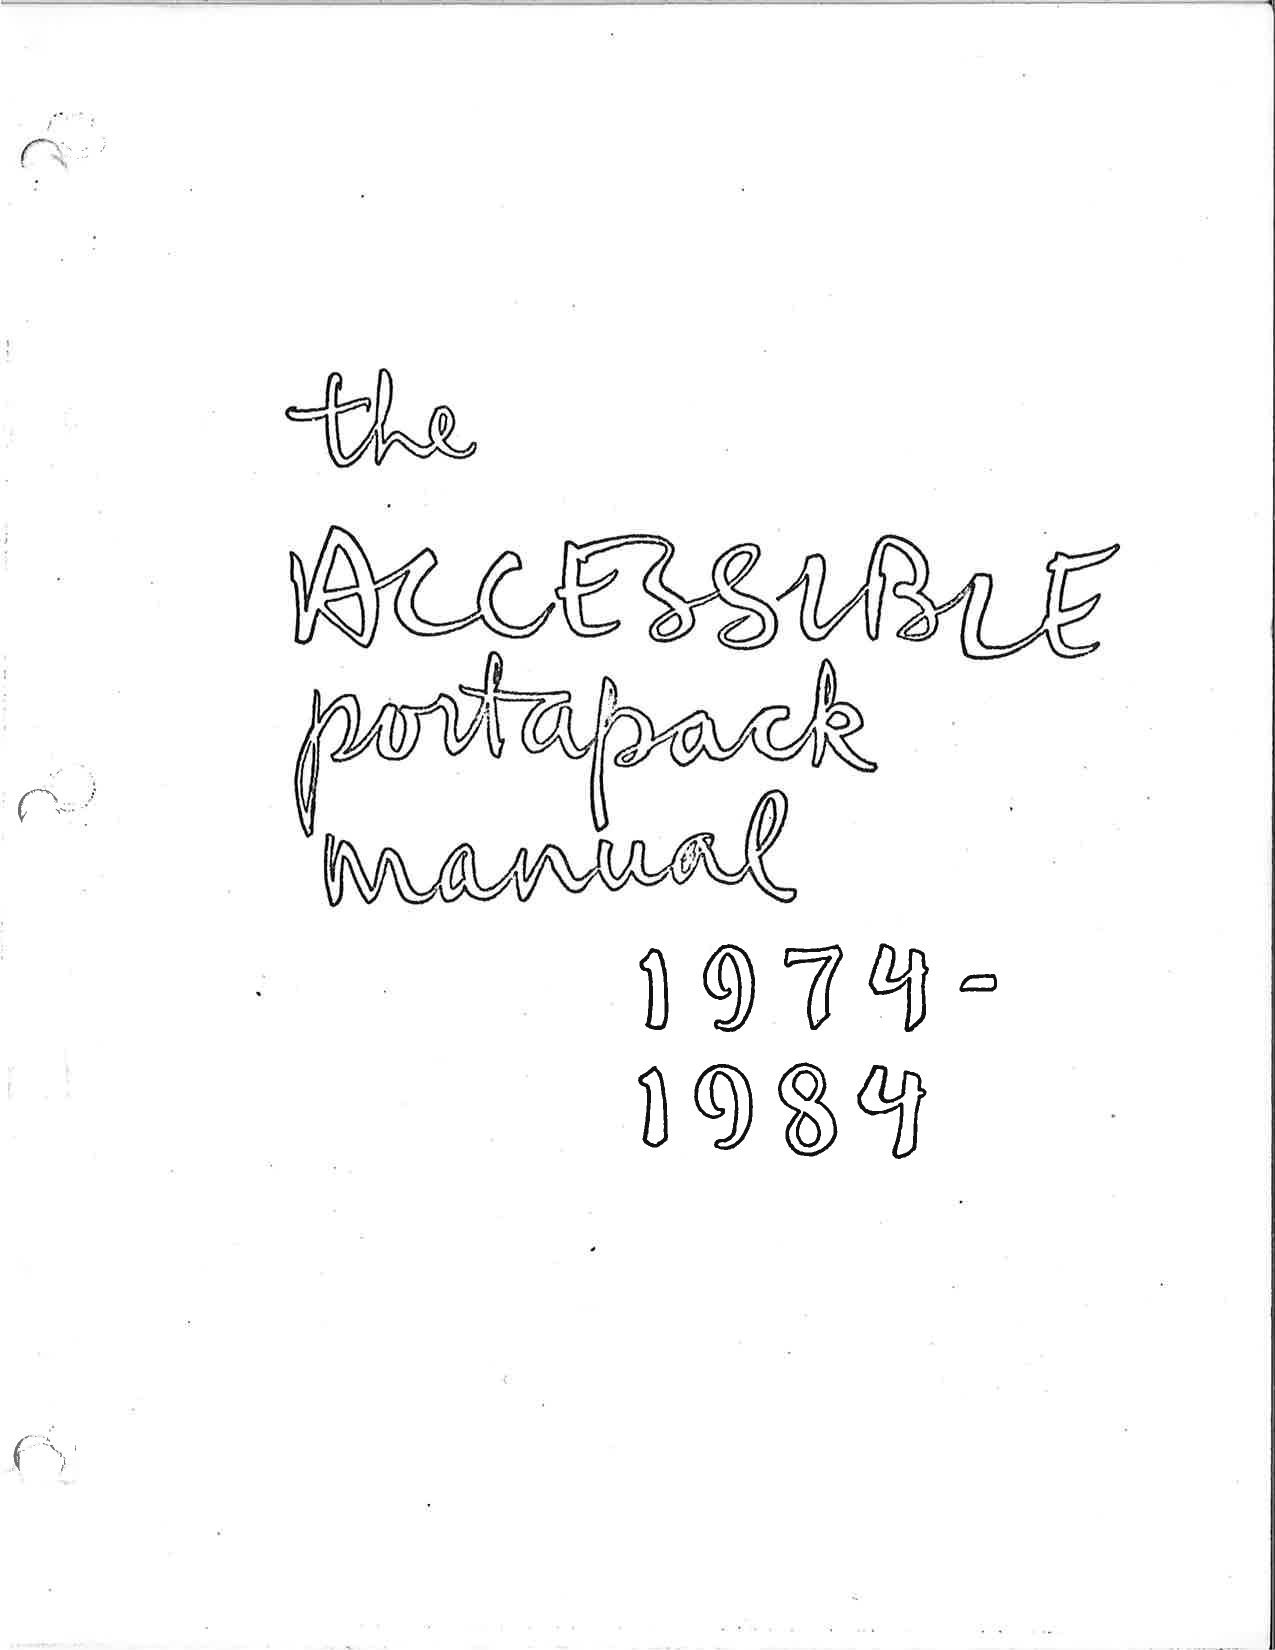 Première page du manuel du Portapak. La page est blanche à l’exception d’un titre manuscrit The Accessible Portapak Manual 1974-1984.